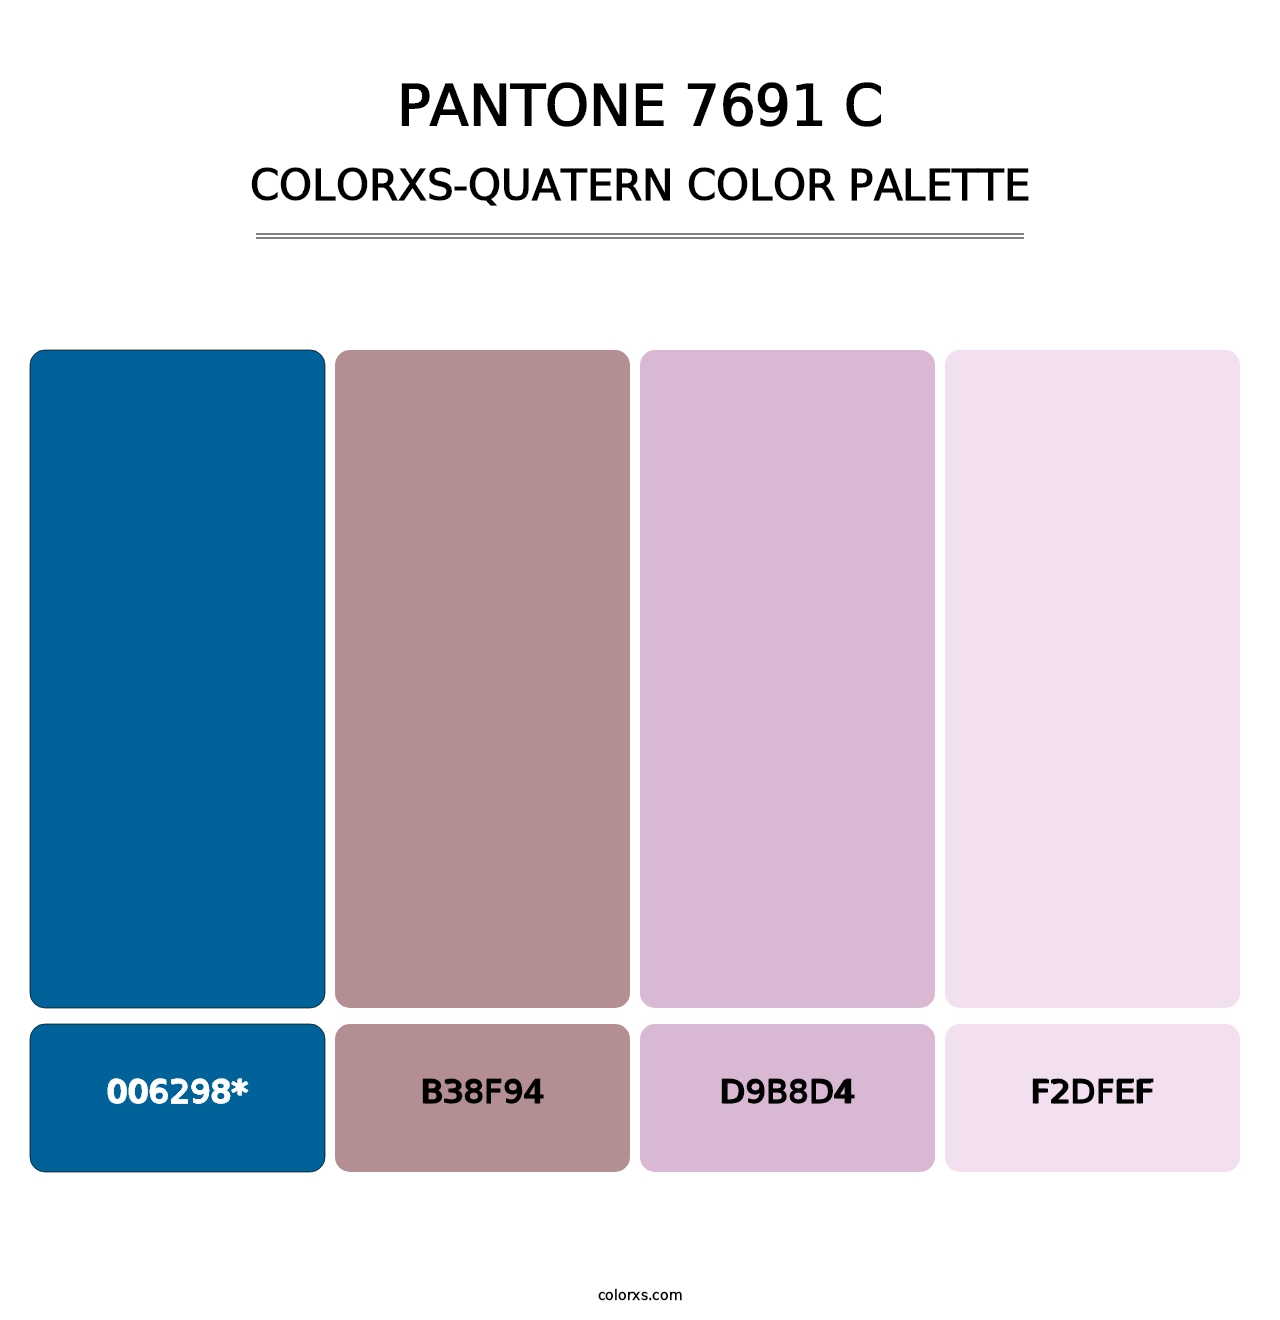 PANTONE 7691 C - Colorxs Quatern Palette